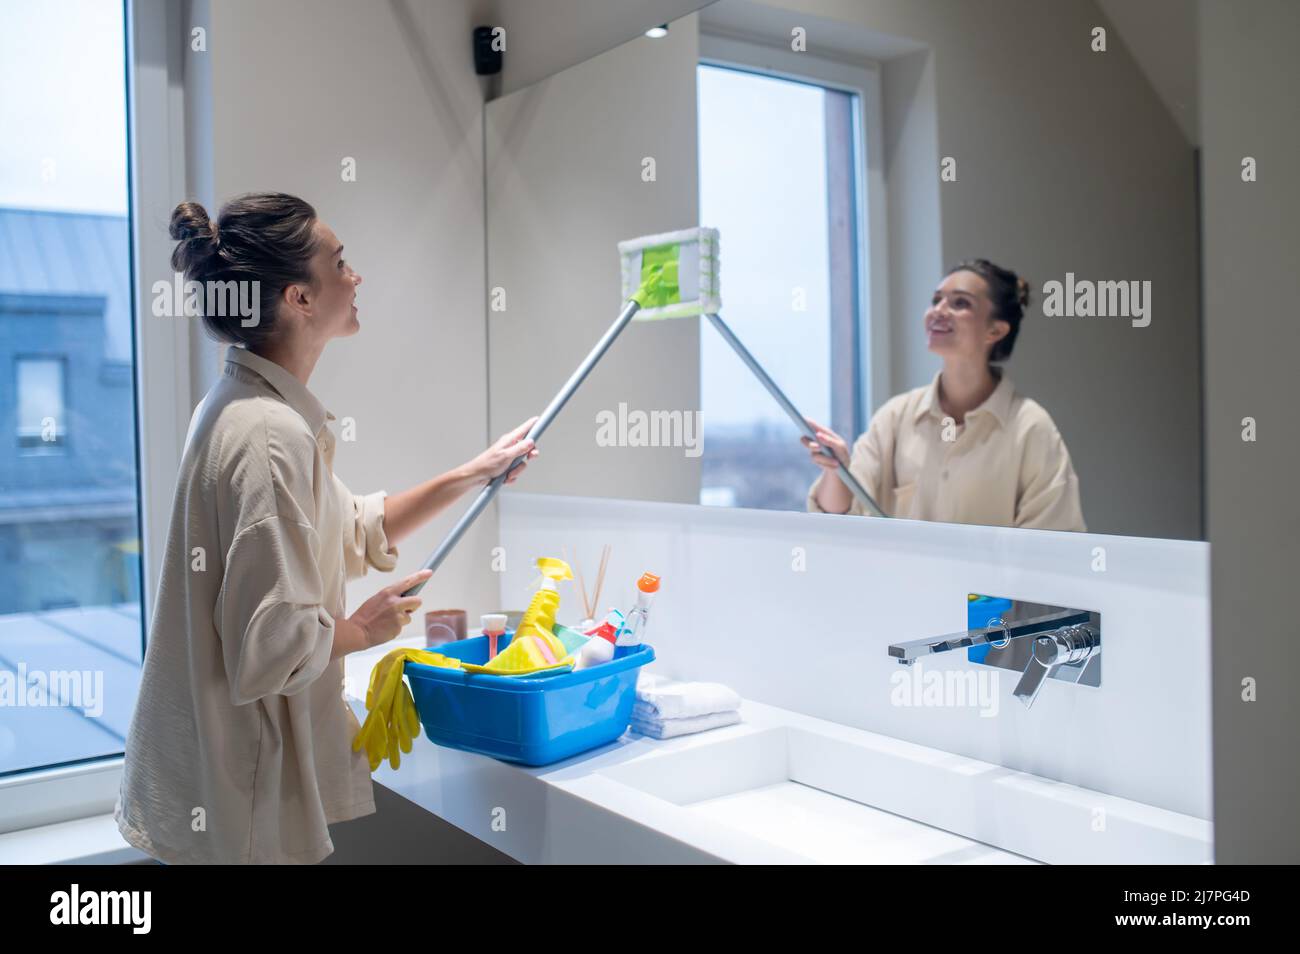 Une jeune femme nettoie le miroir dans la salle de bains Banque D'Images